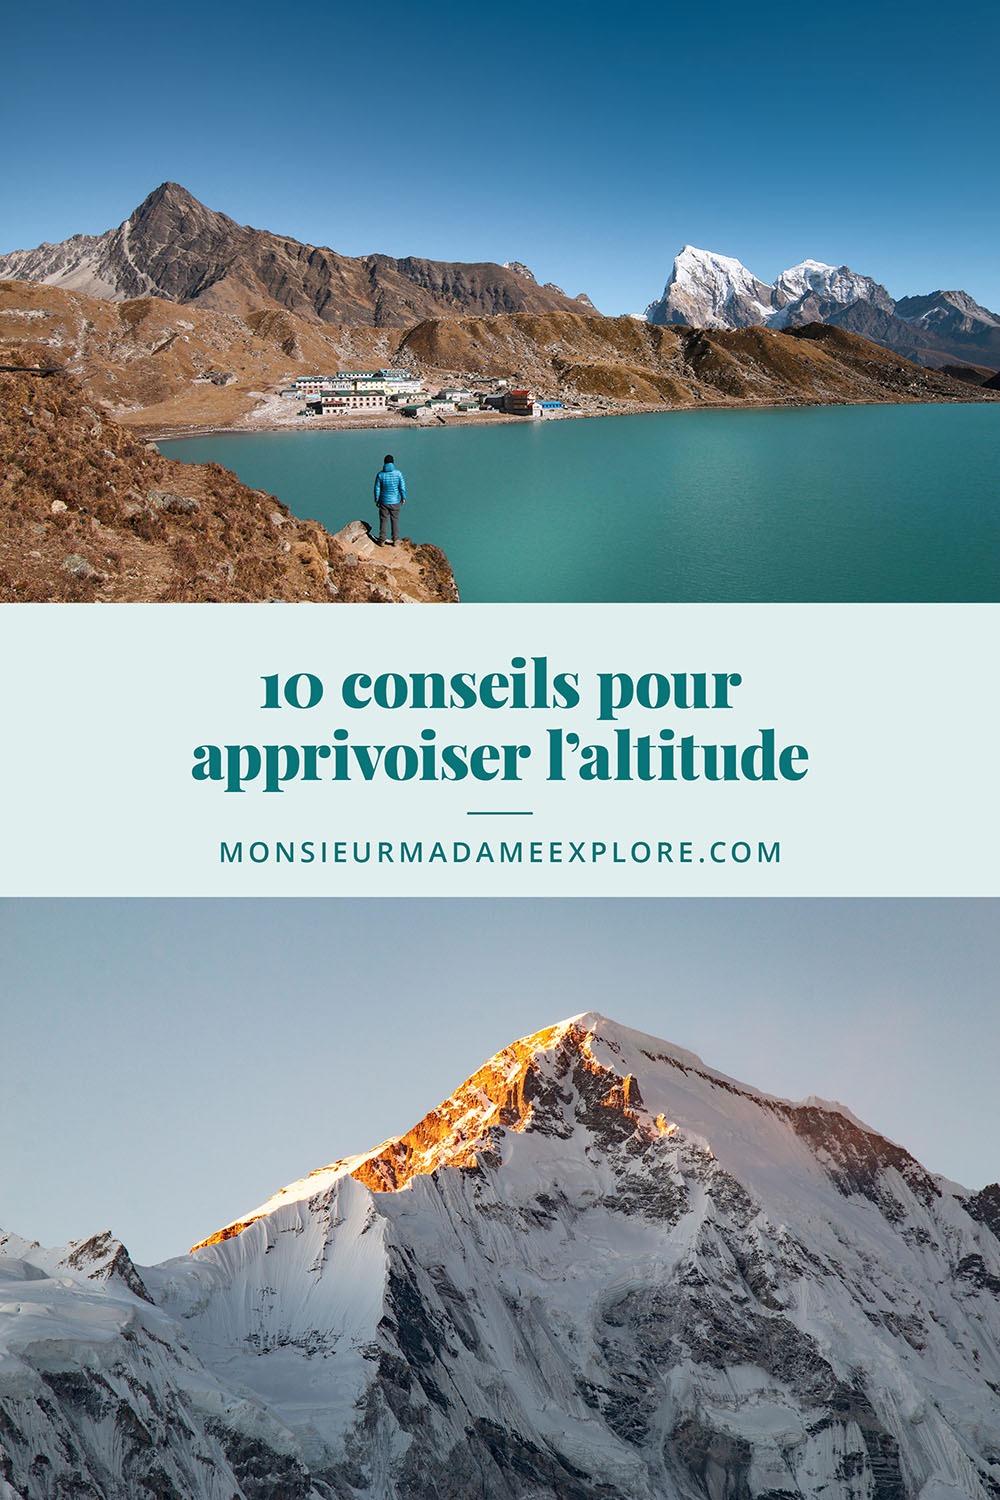 10 conseils pour apprivoiser l’altitude, Monsieur+Madame Explore, Blogue de voyage / 10 tips for dealing with altitude